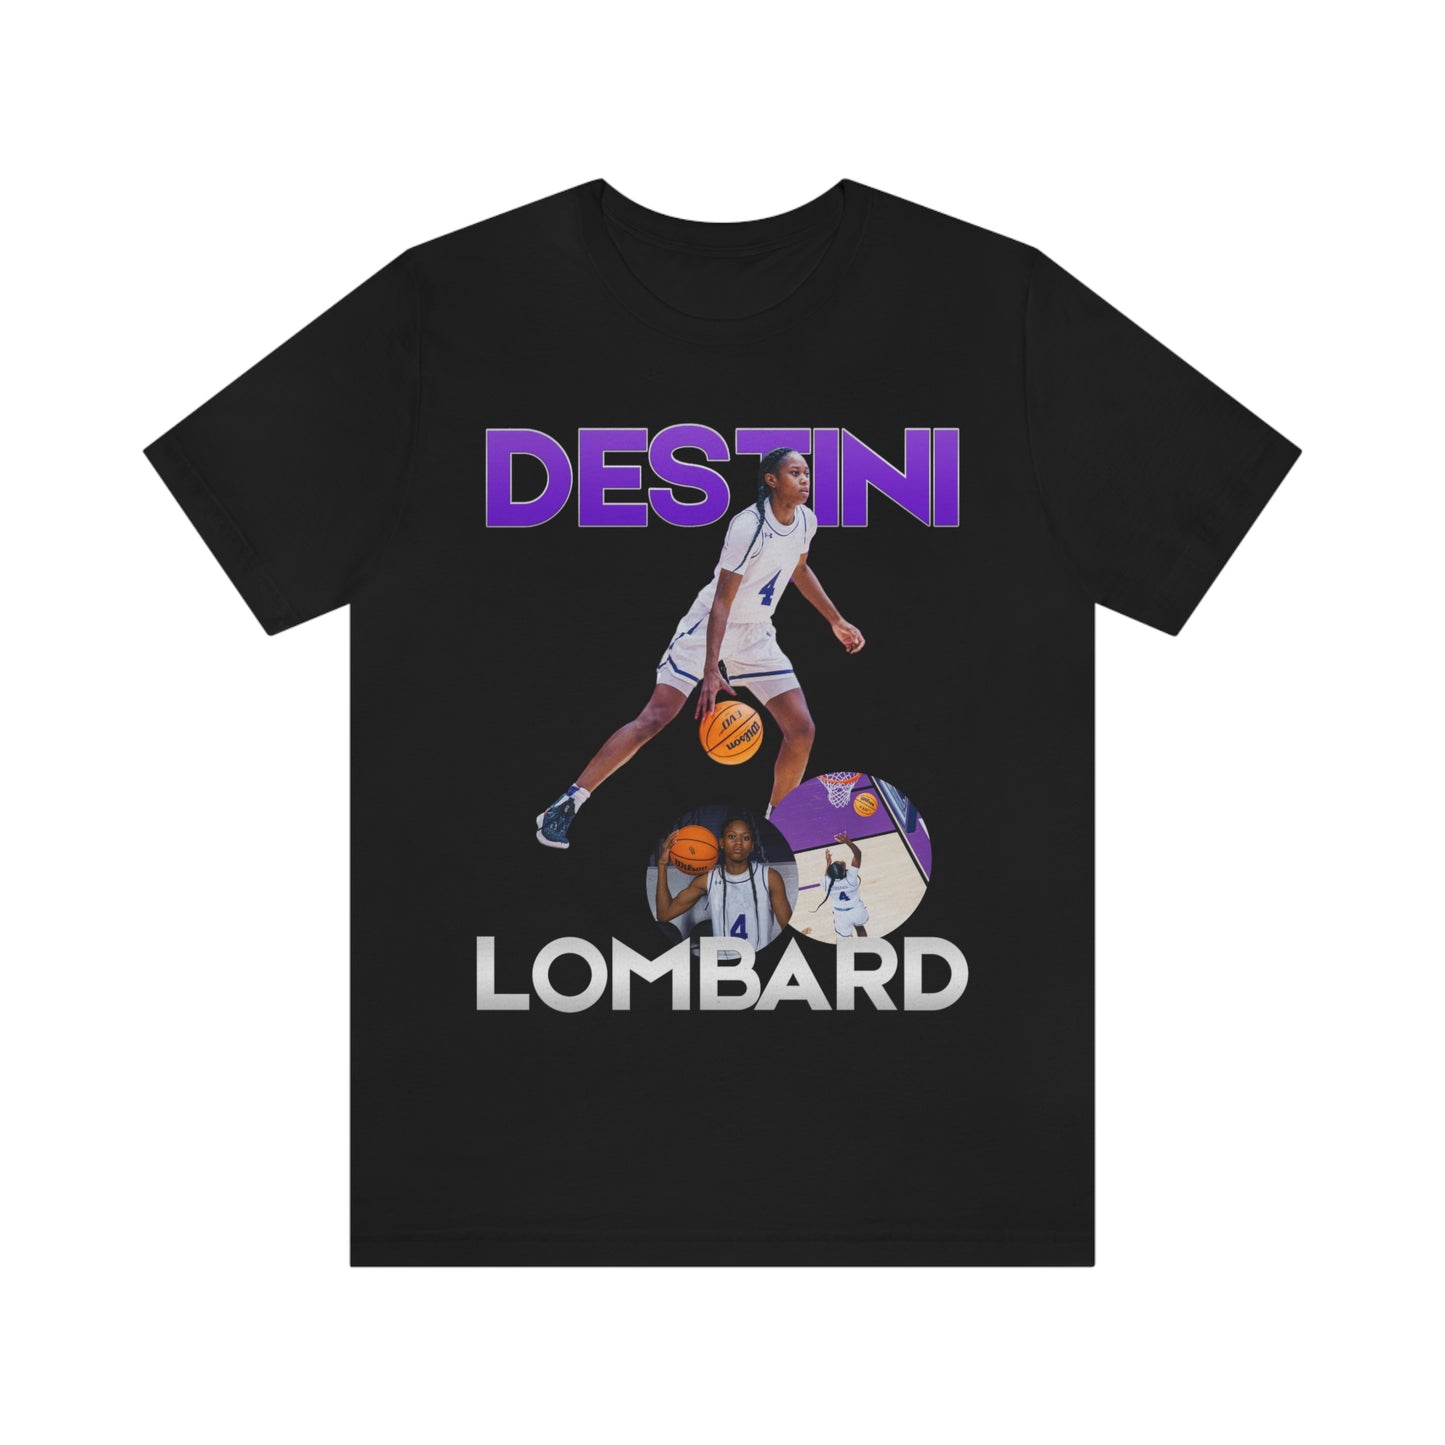 Destini Lombard: GameDay Tee